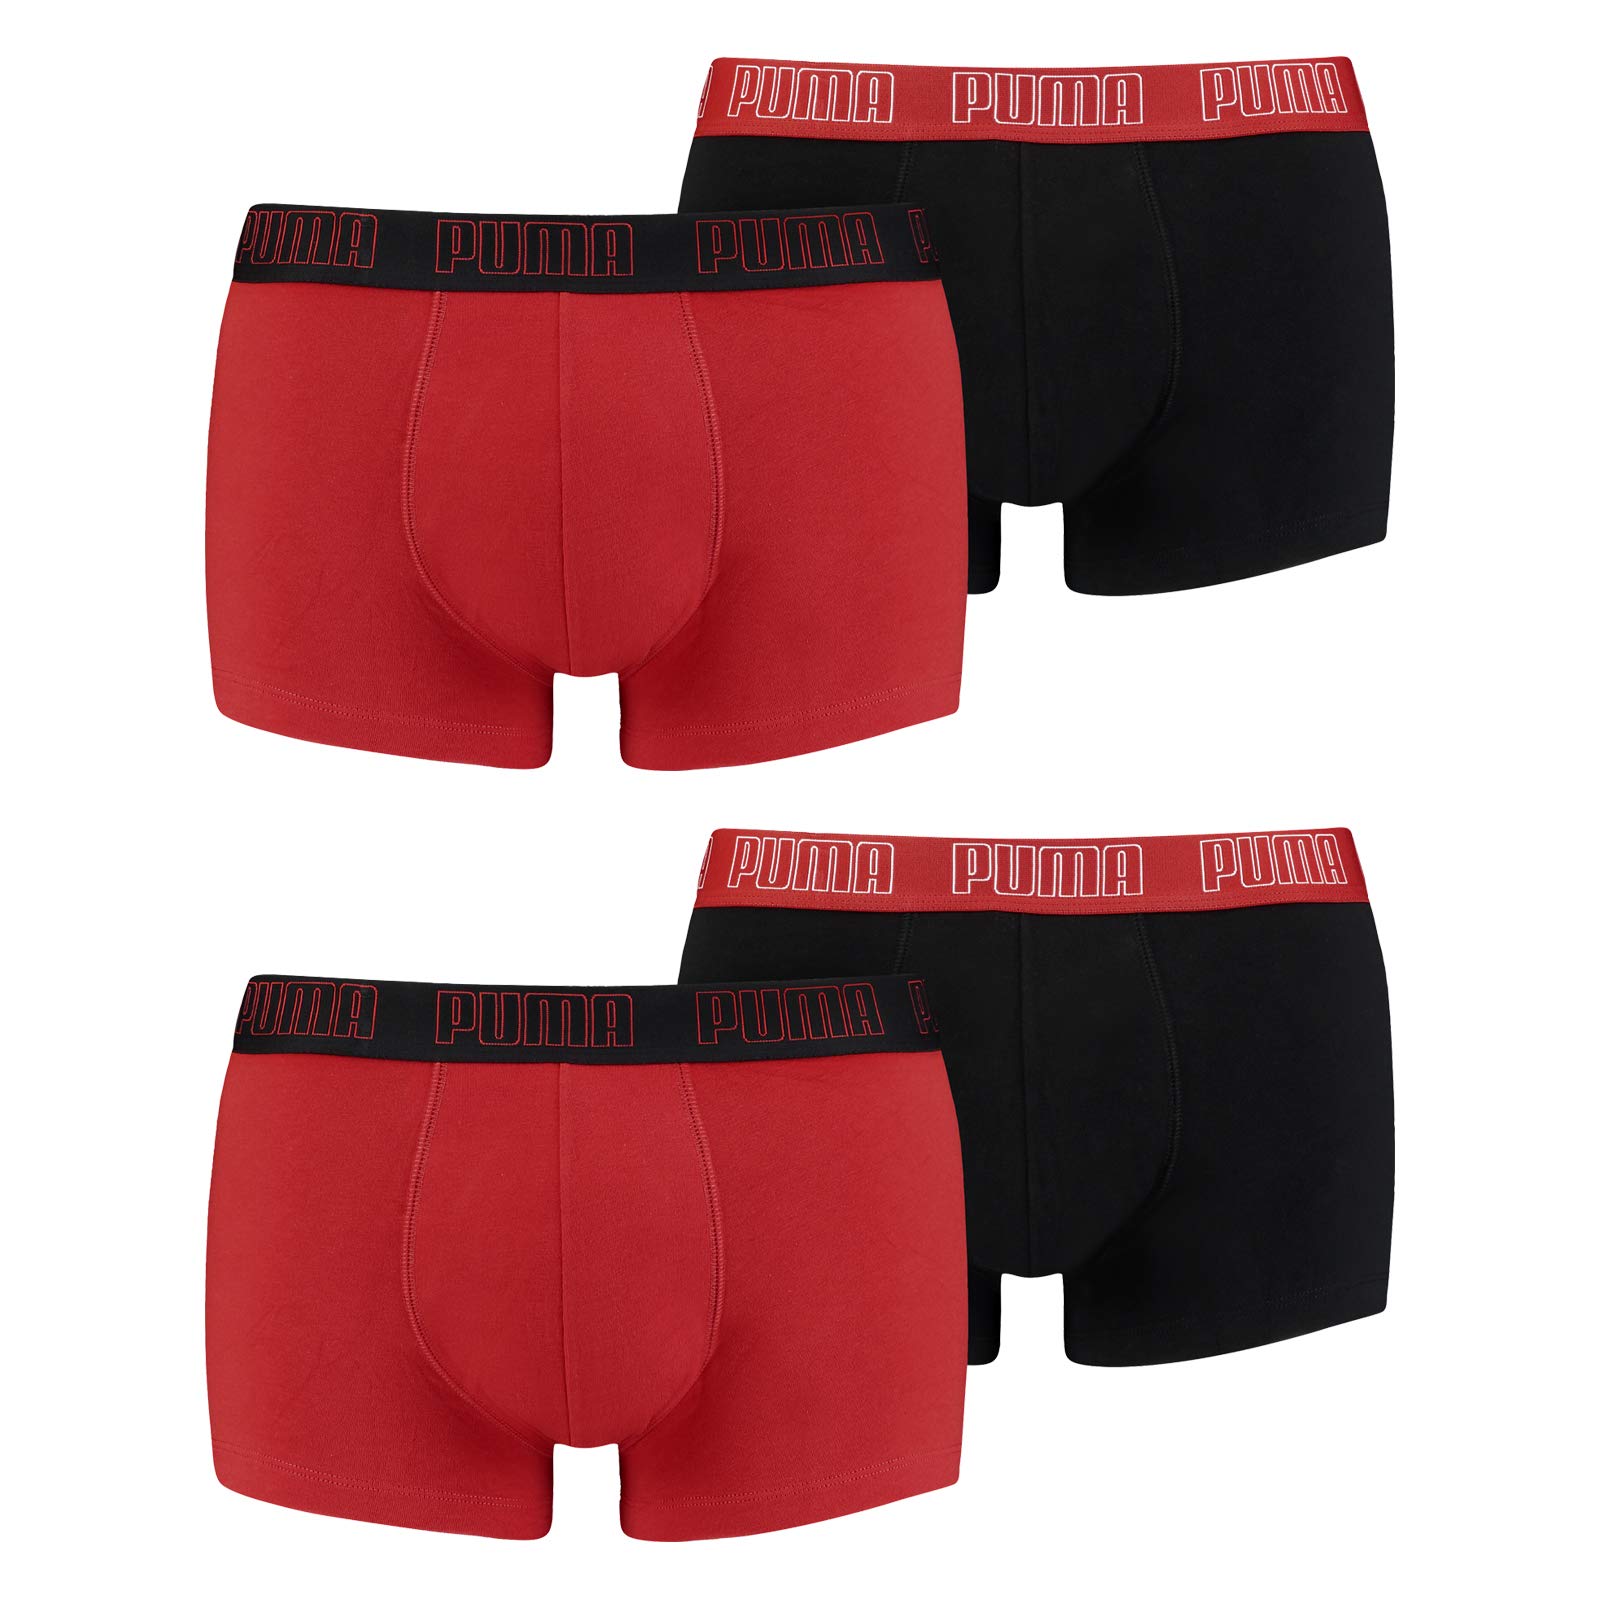 PUMA Herren Shortboxer Unterhosen Trunks 4er Pack, Wäschegröße:L, Artikel:-002 red/Black